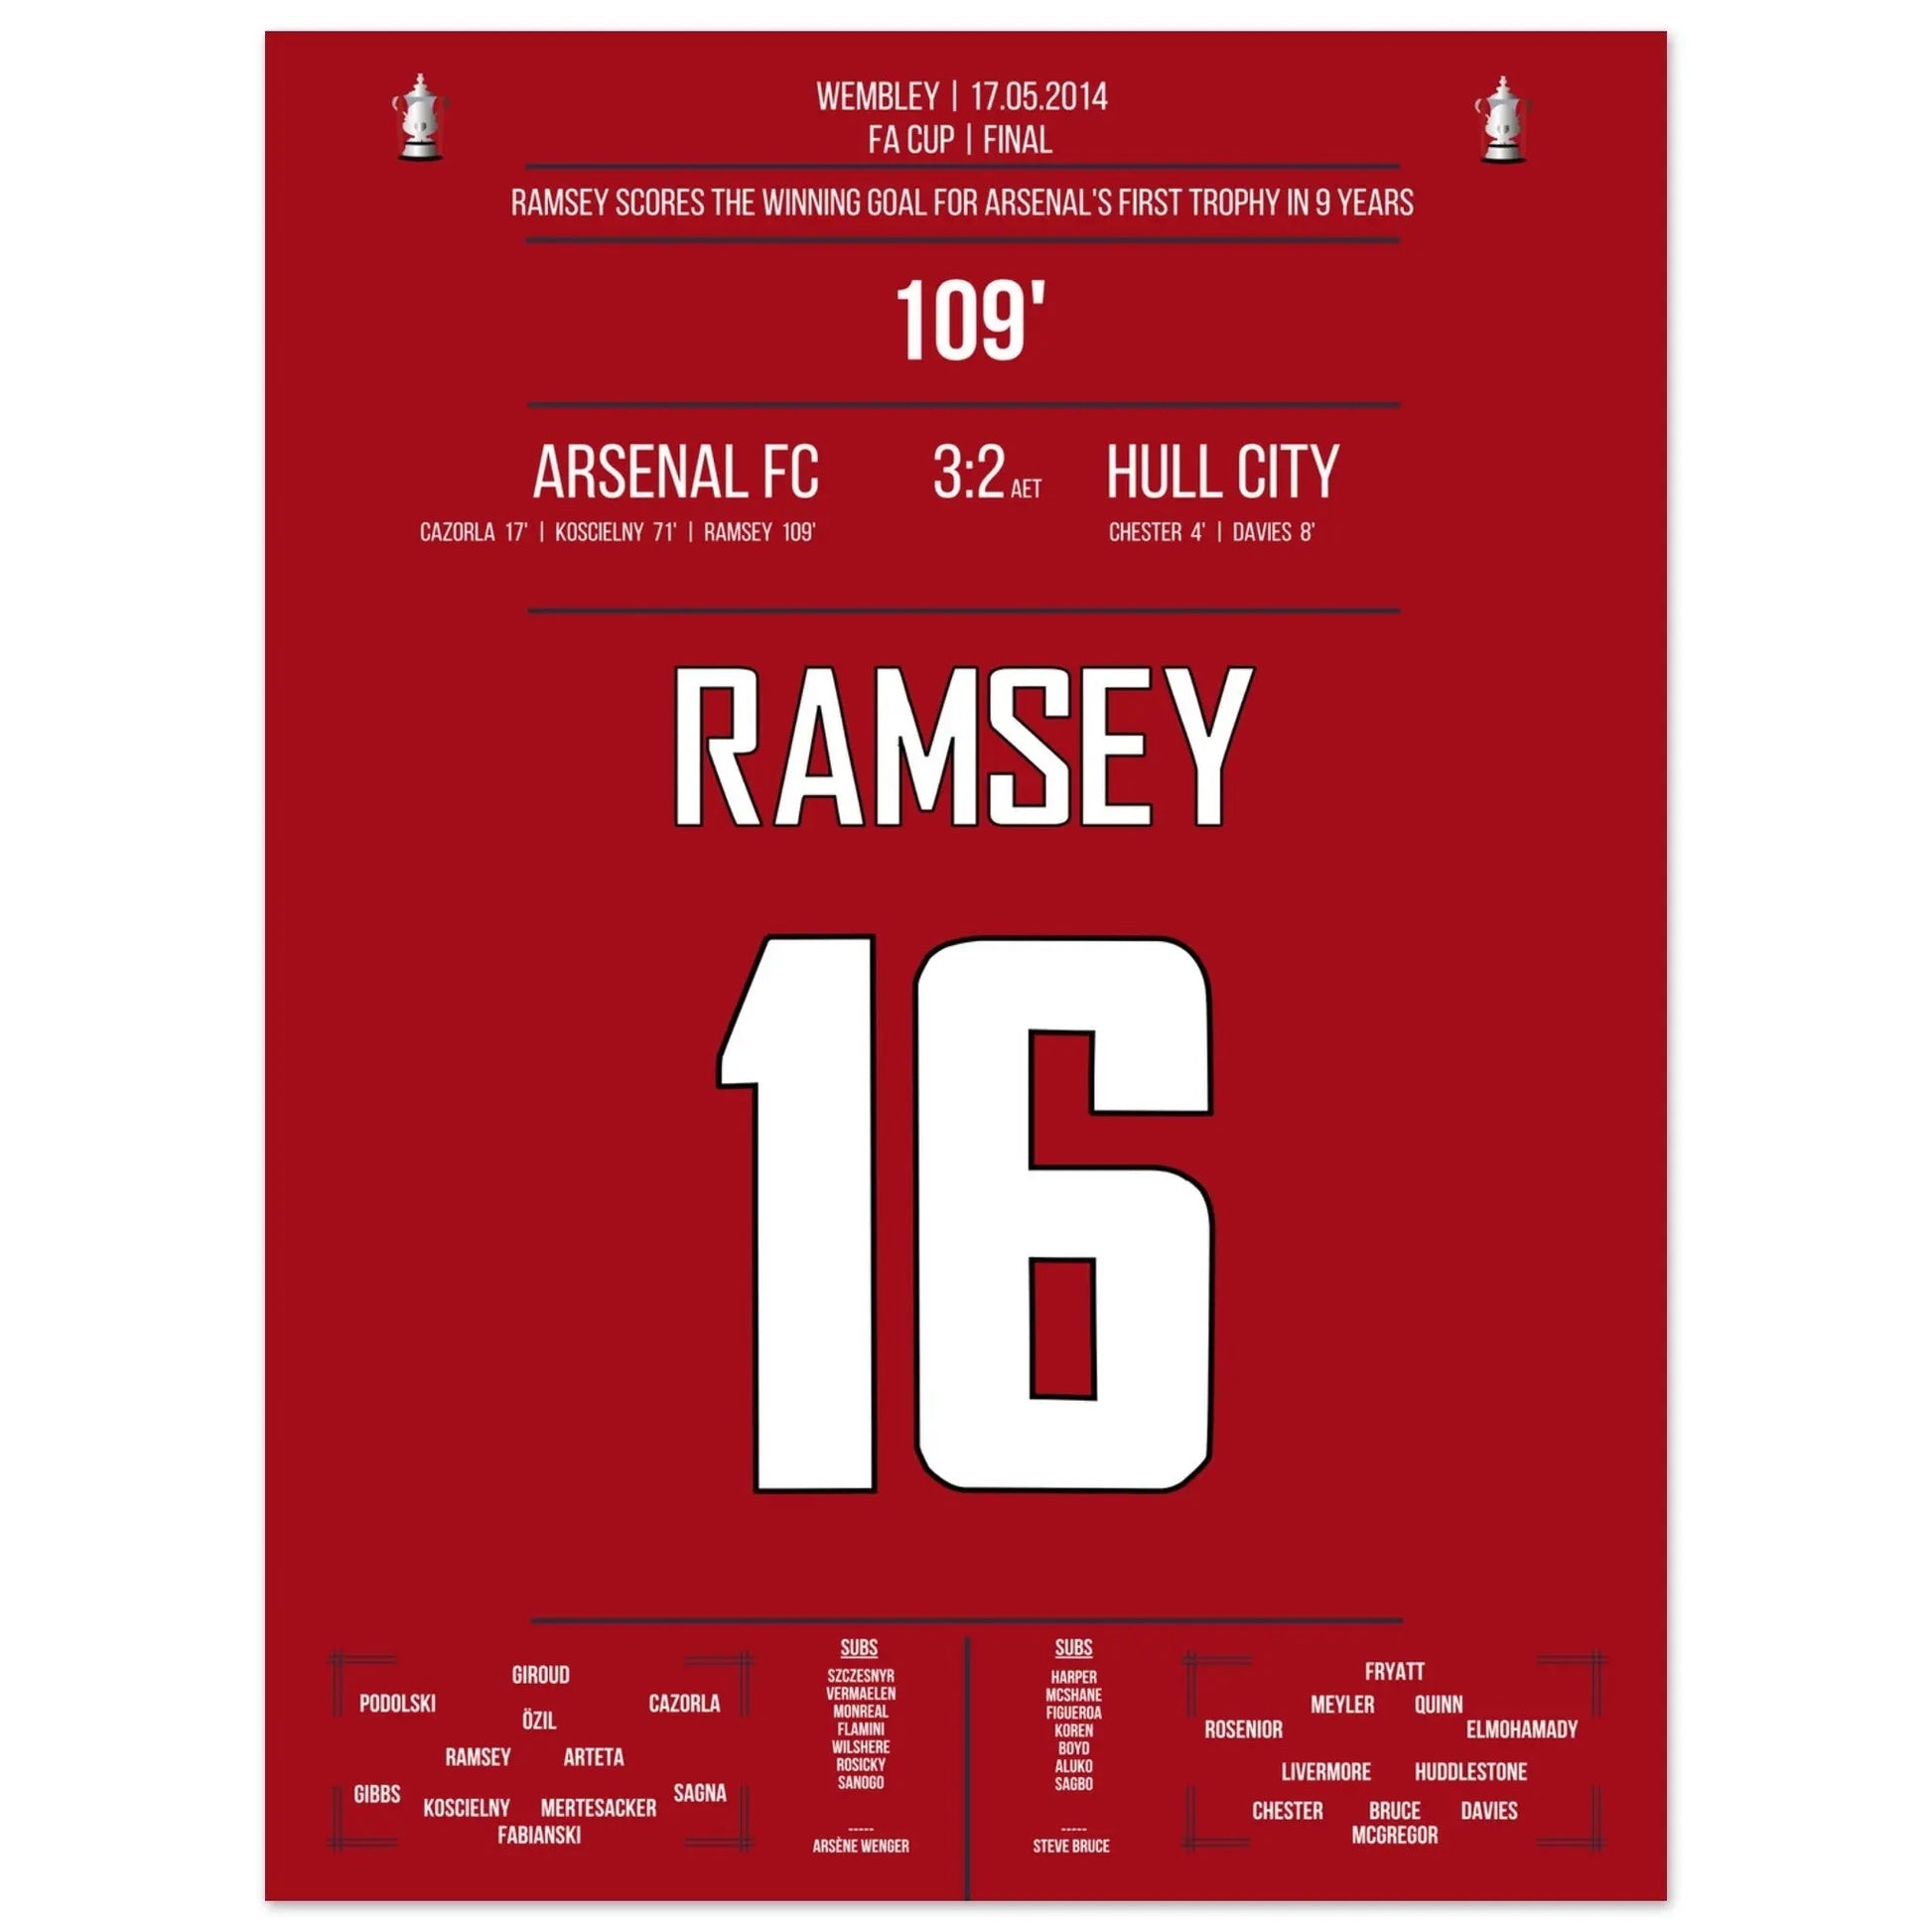 Arsenal's erster Titelgewinn nach 9 Jahren in 2014 45x60-cm-18x24-Ohne-Rahmen